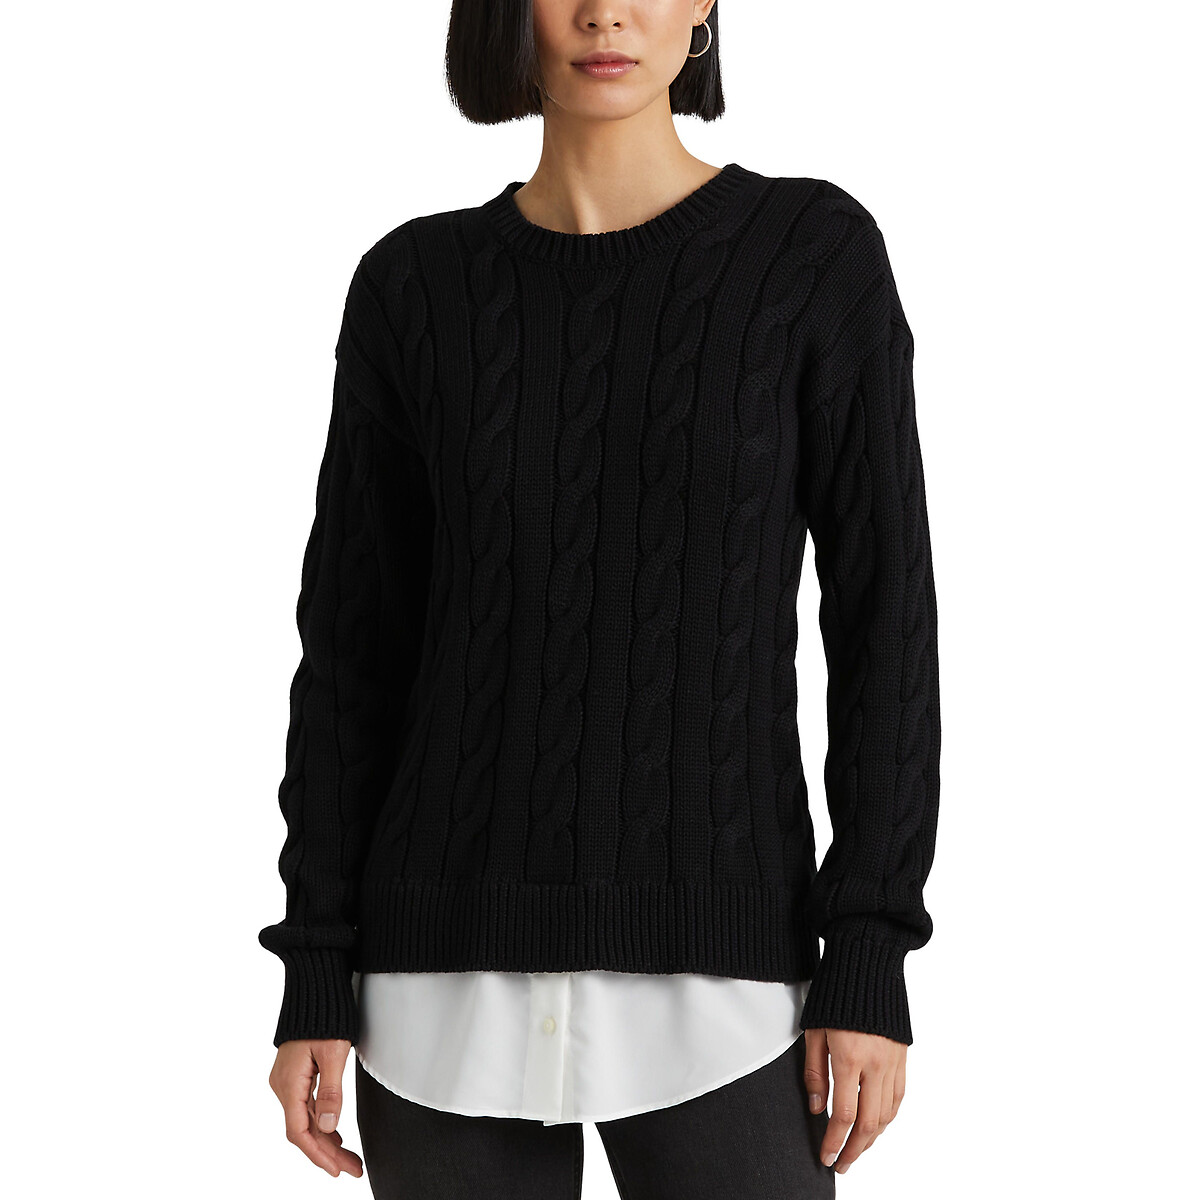 Пуловер с круглым вырезом из плетеного трикотажа  S черный LaRedoute, размер S